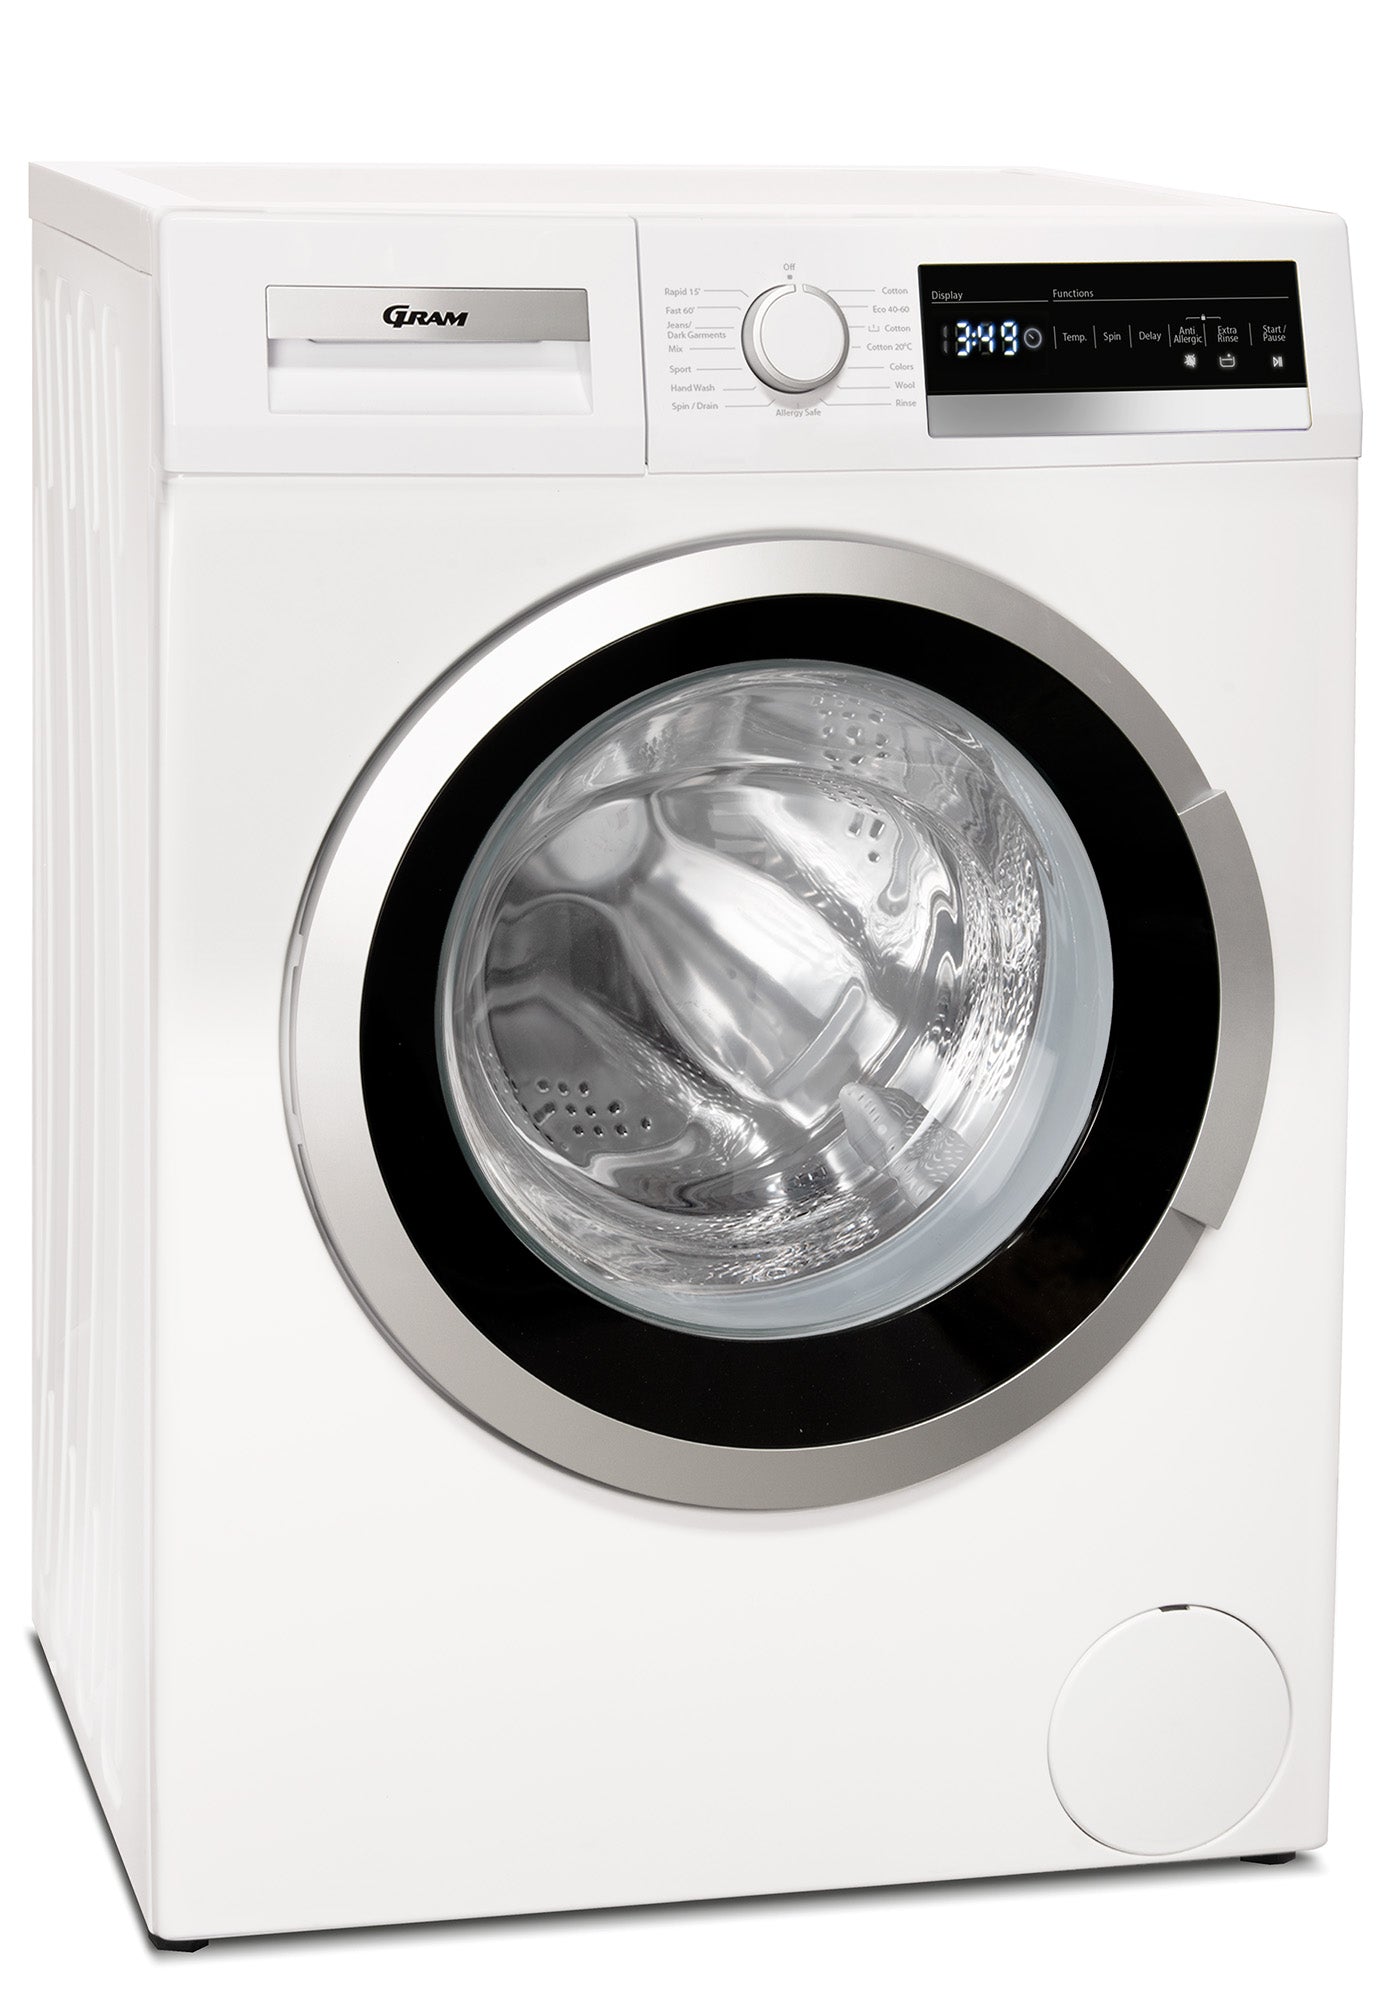 Gram WDE 71814-92 - Frontbetjent vaskemaskine